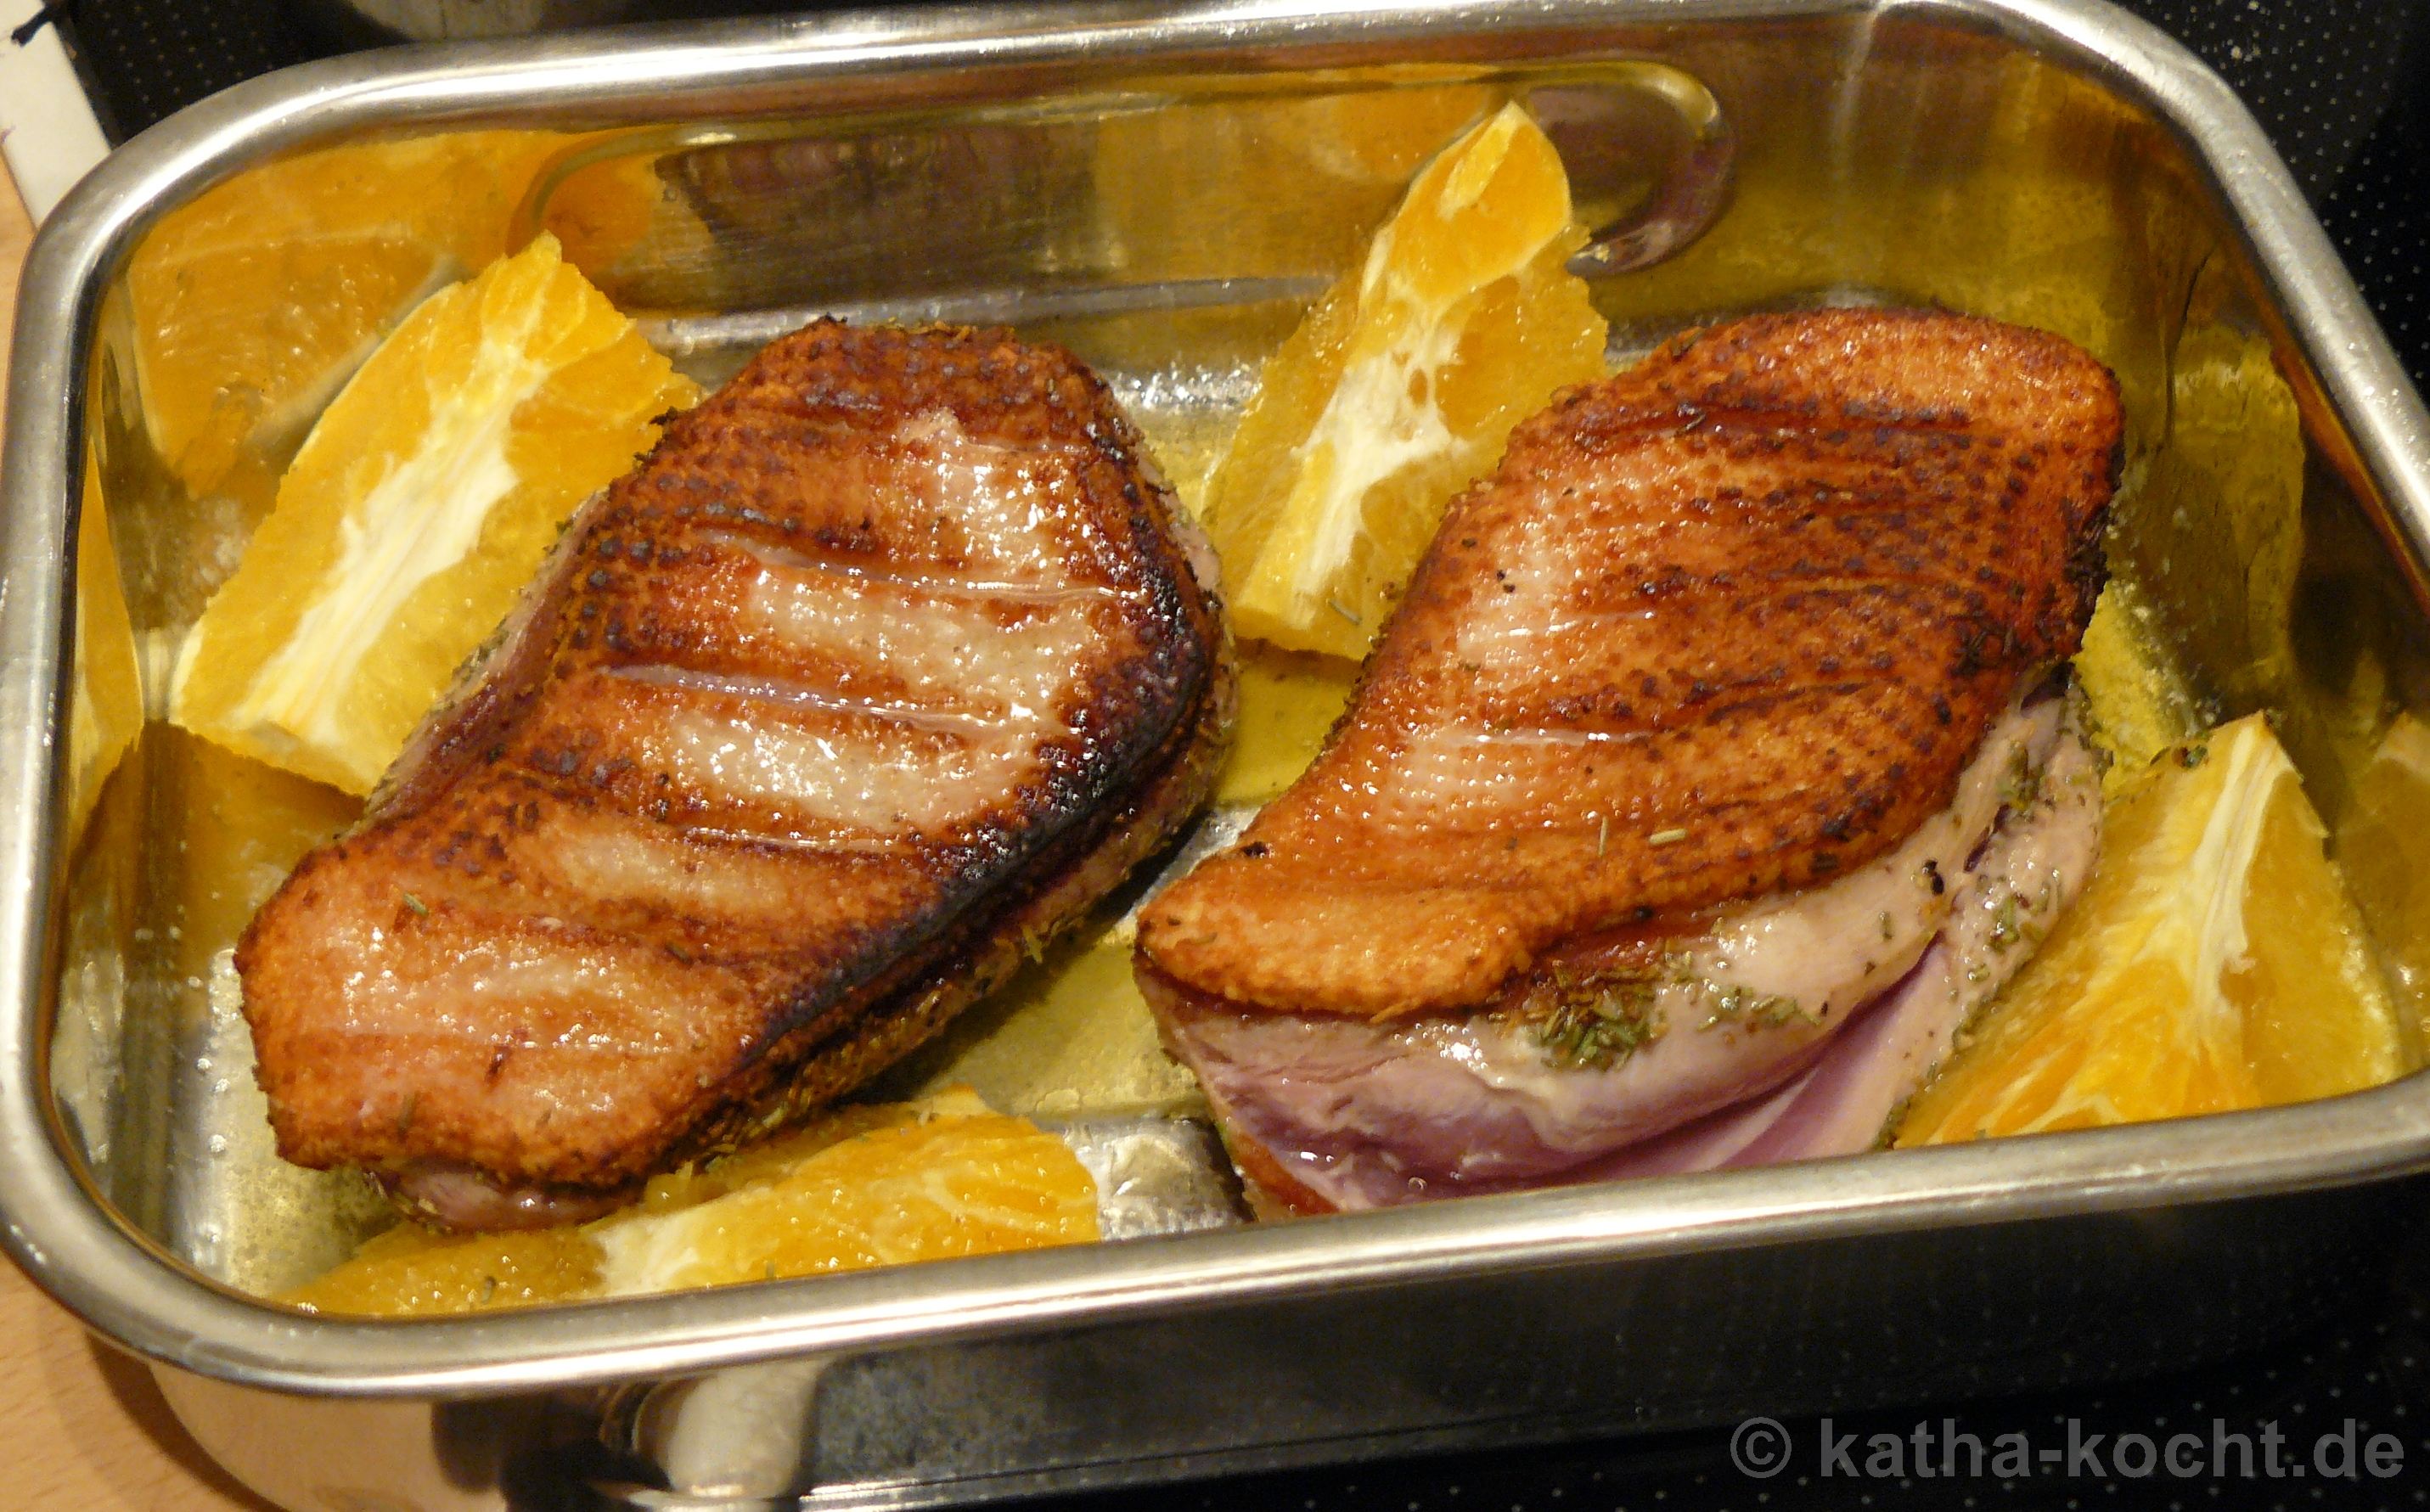 Entenbrust in Orangensauce mit Rotkohl und Klößen - Katha-kocht!